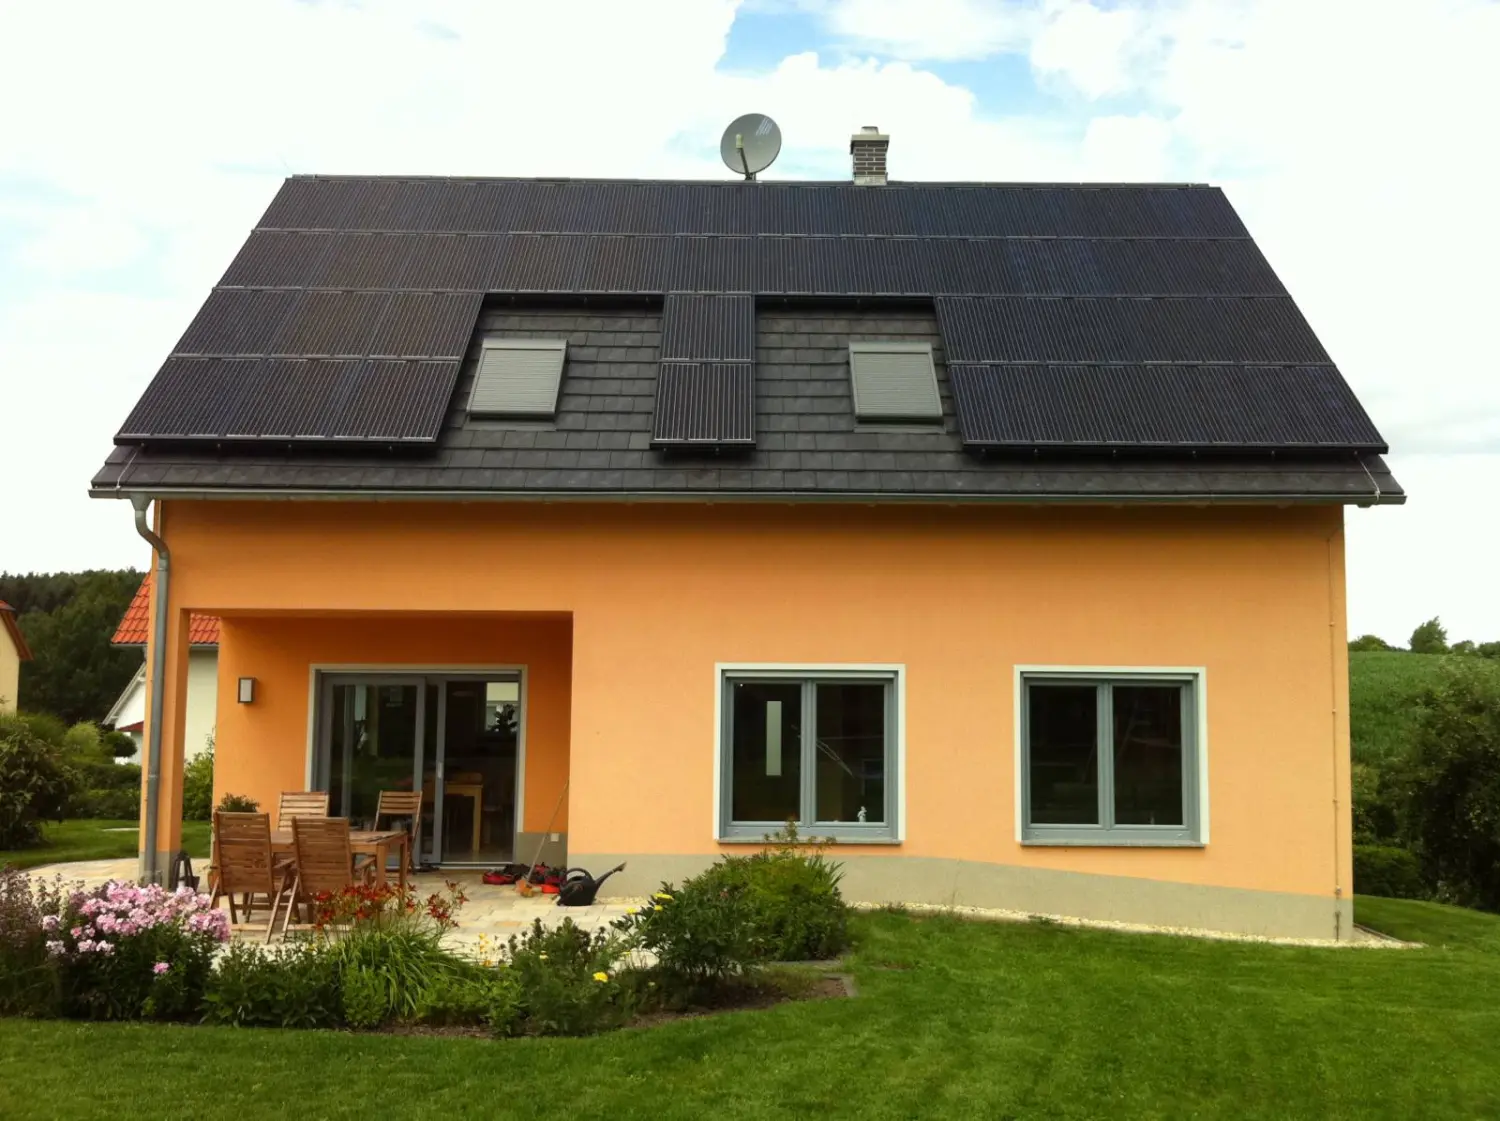 PV-Anlage mitverschiedenen Unterkonstruktionen vom Solarzentrum Thüringen